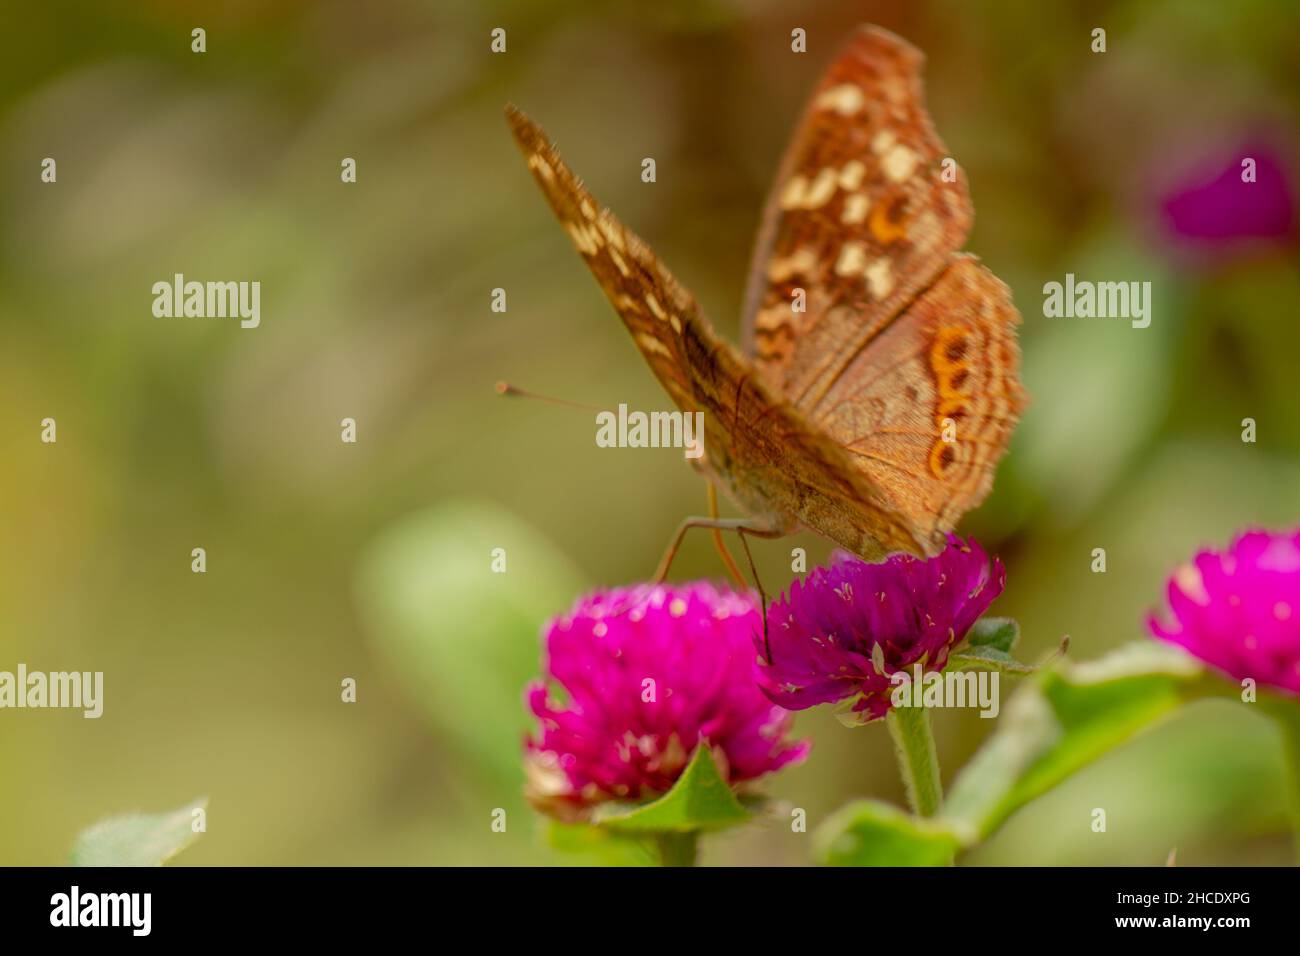 Ein brauner Schmetterling, der nach Honig sucht und auf einer rosa Zinnienblüte auf einem verschwommenen grünen Blatthintergrund thront, Naturkonzept Stockfoto